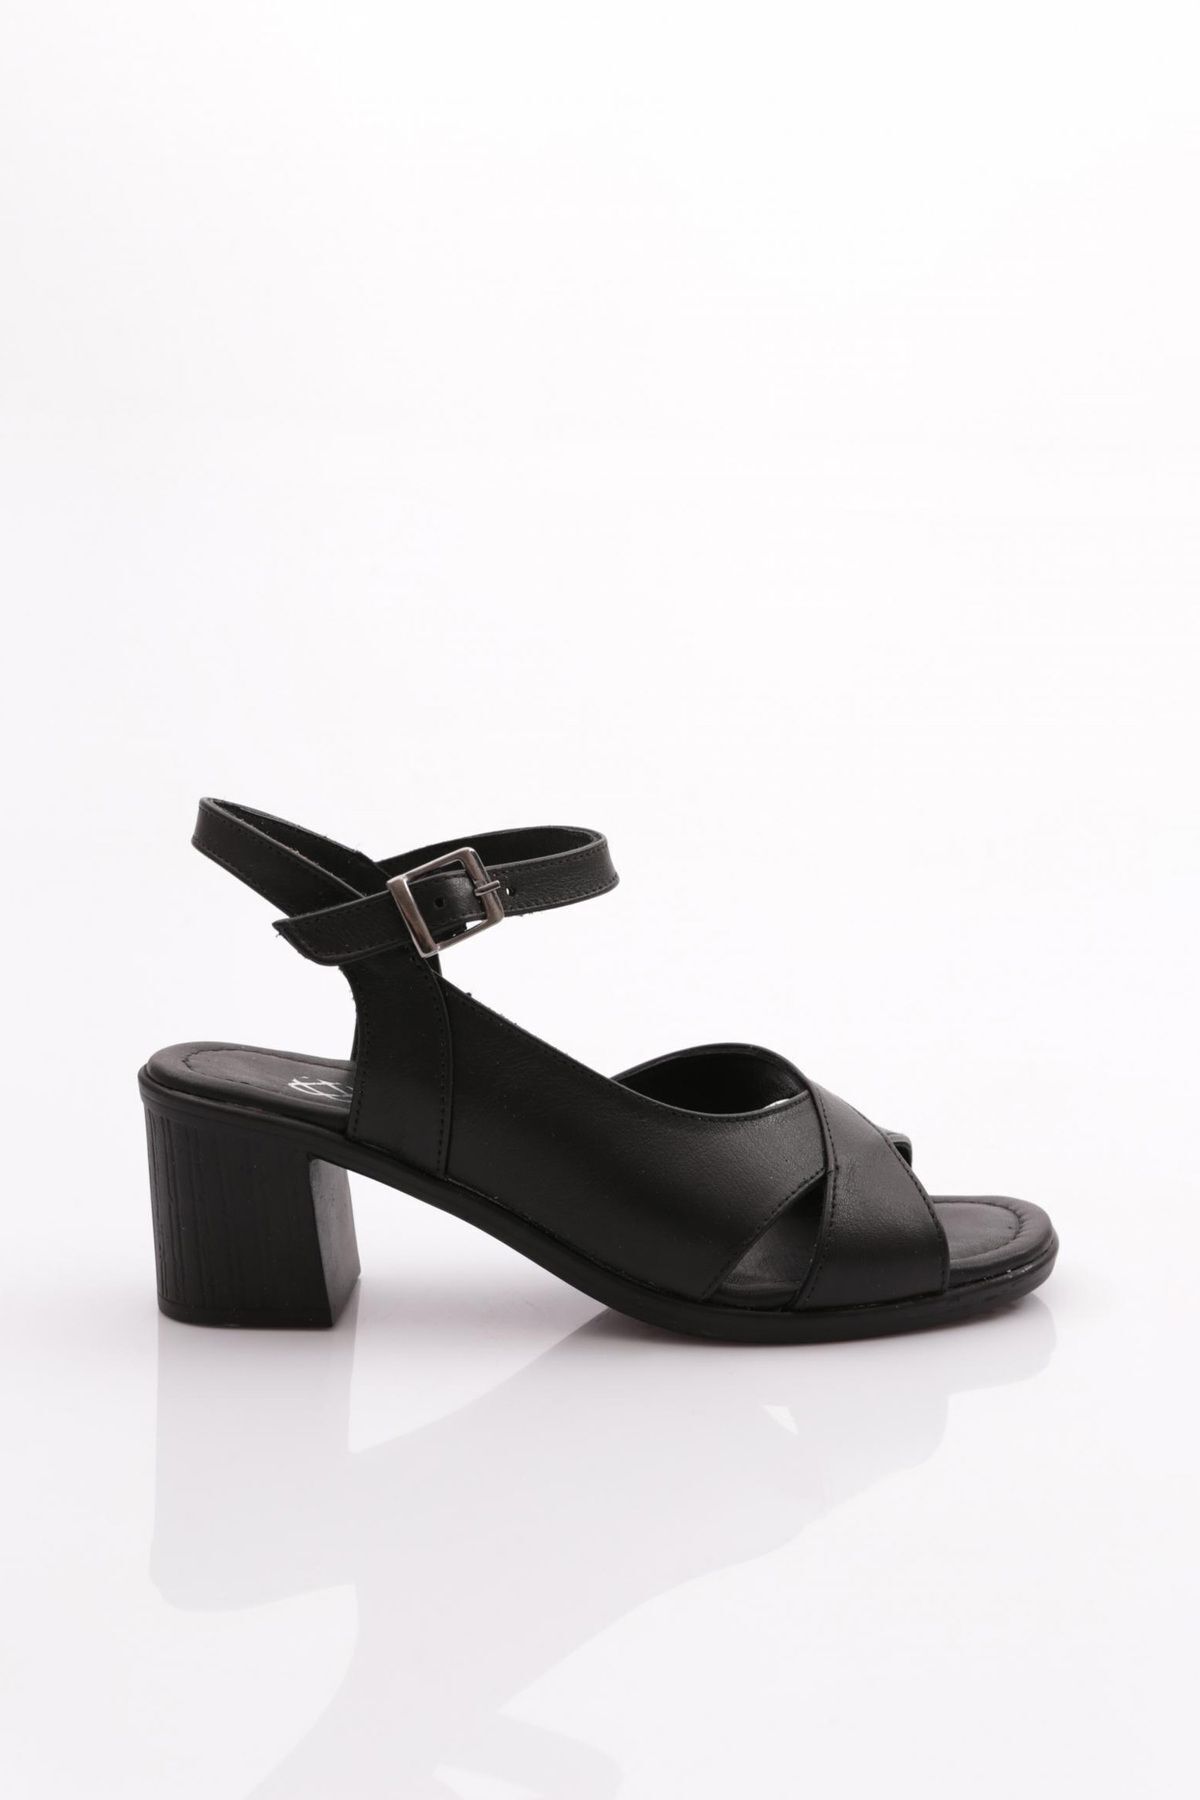 Dgn 2208 Kadın Topuklu Sandalet Hakiki Deri Siyah